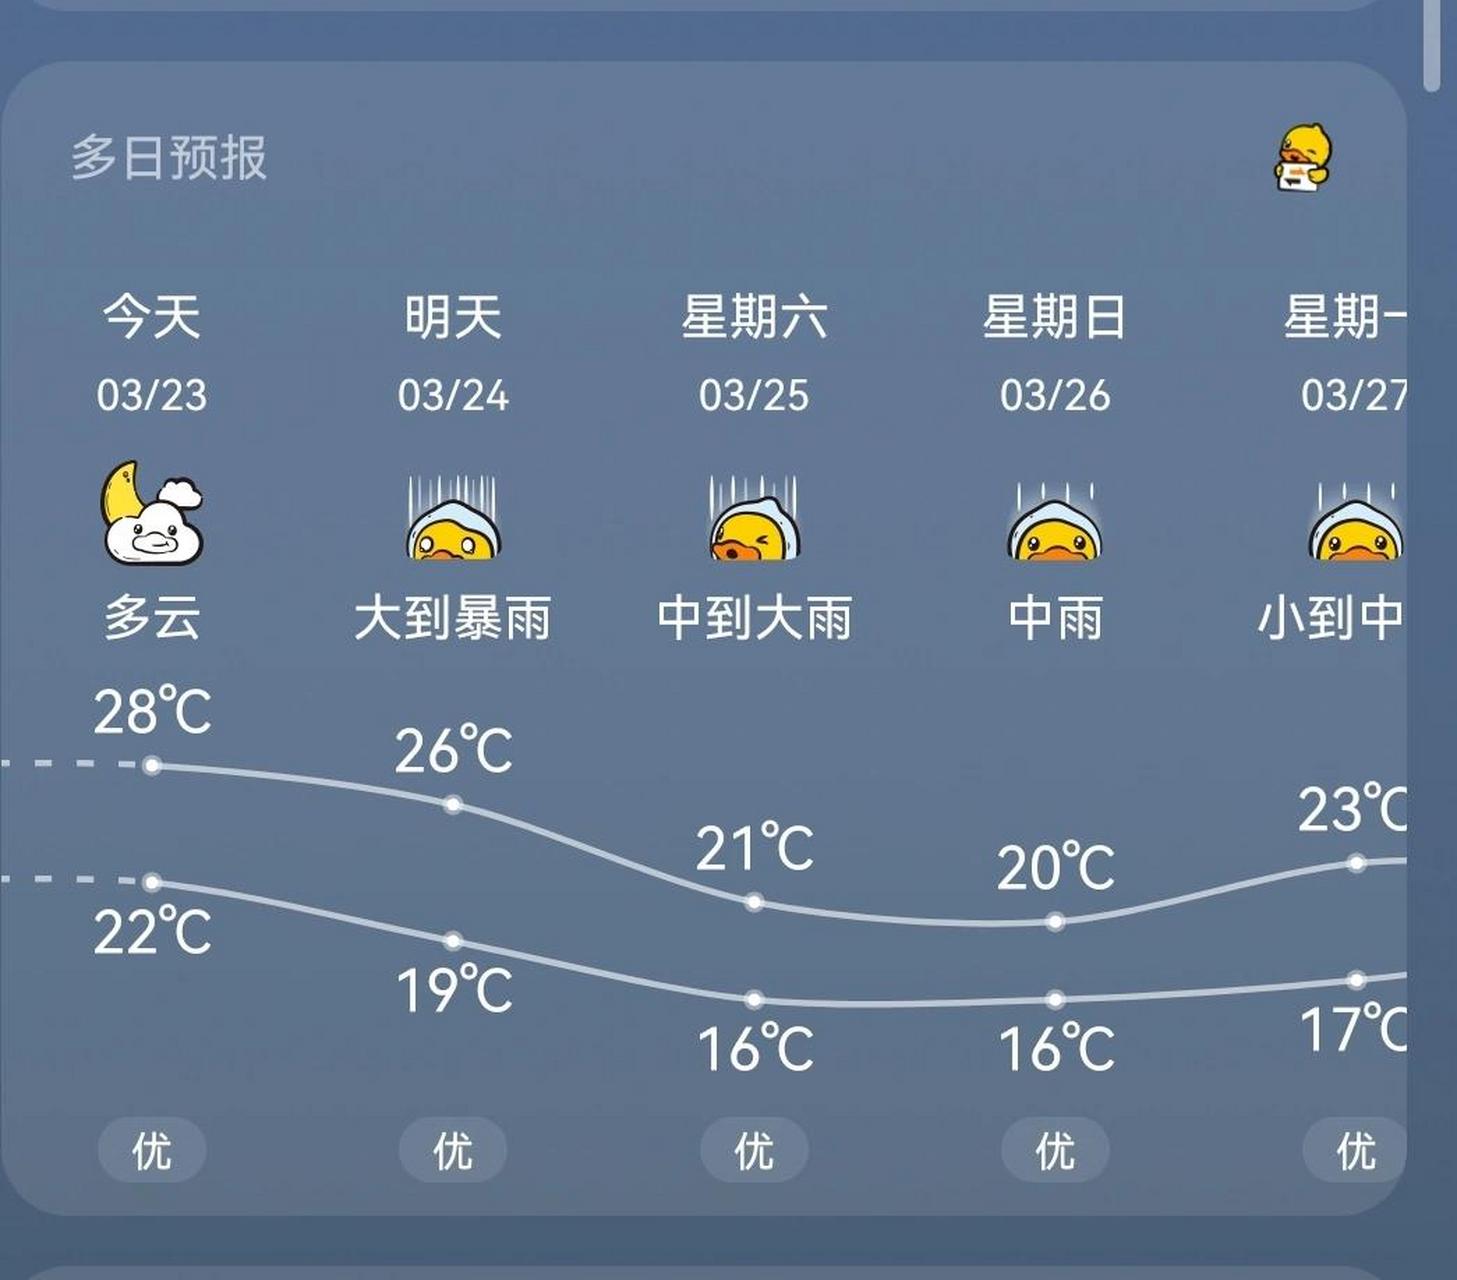 广州天气预报 希望接下来的天气一如预报 不然 一直等下雨 一直没雨